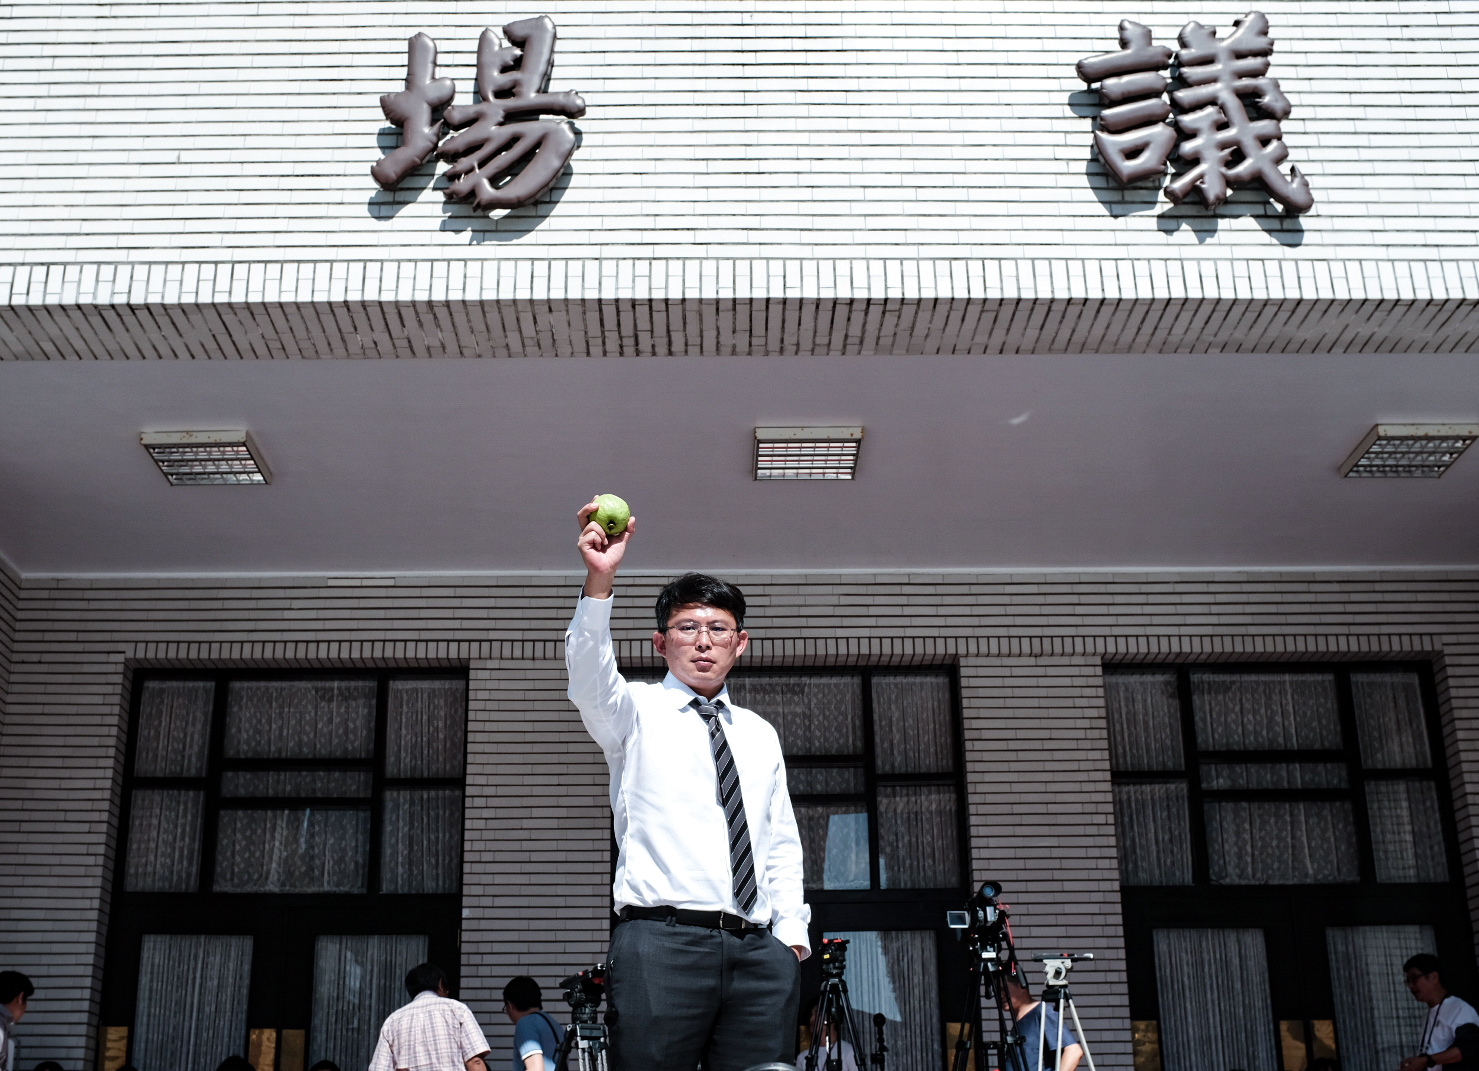 立法院会预计明天处理国会改革法案，民众党立委黄国昌拿著「芭乐」象征举起人民的法槌。记者曾原信／摄影